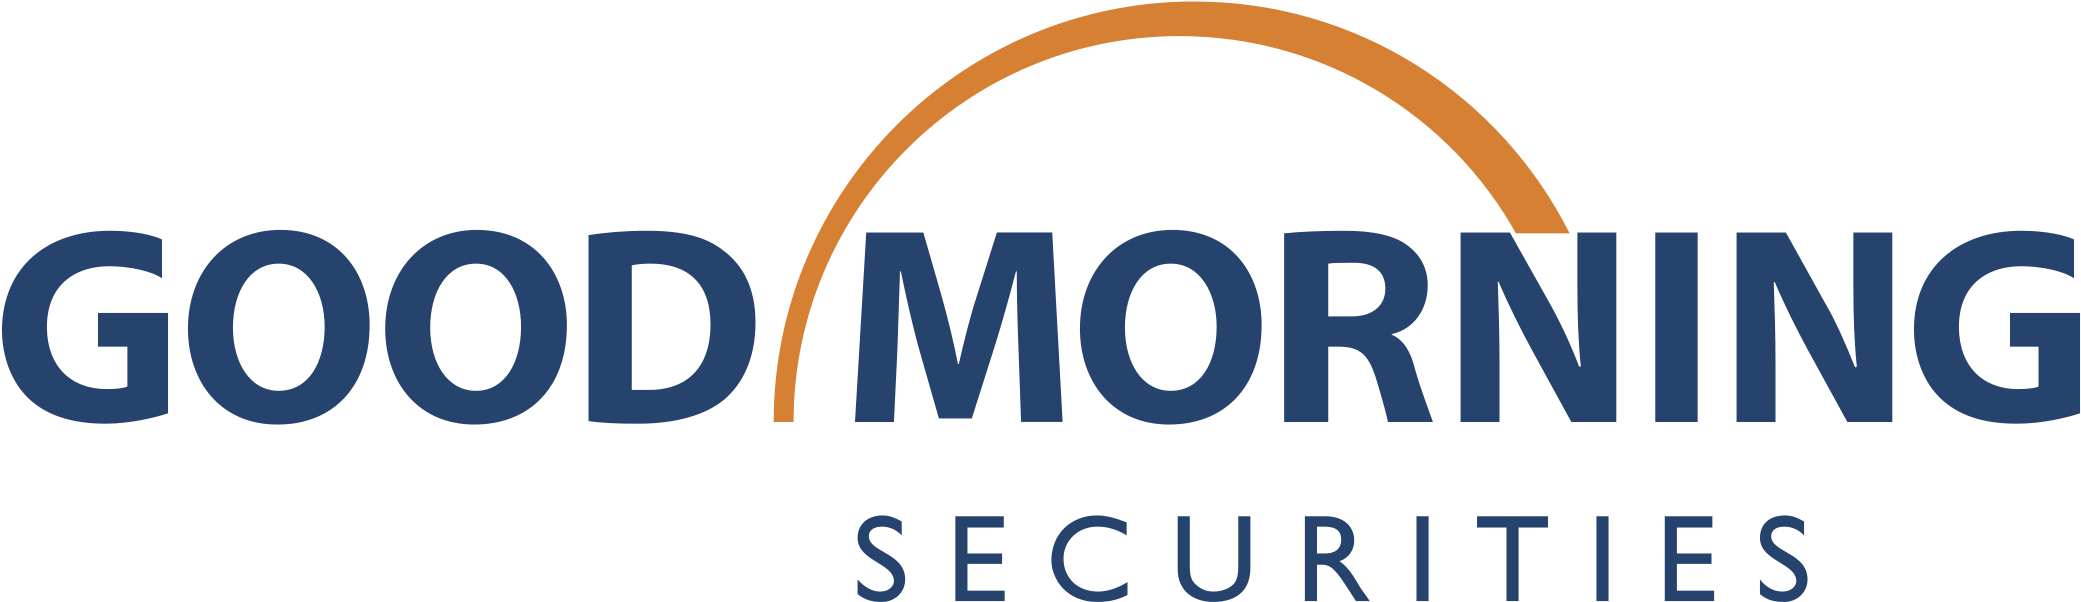 Good Morning Securities Logo Png Transparent - Good Morning (2400x2400), Png Download